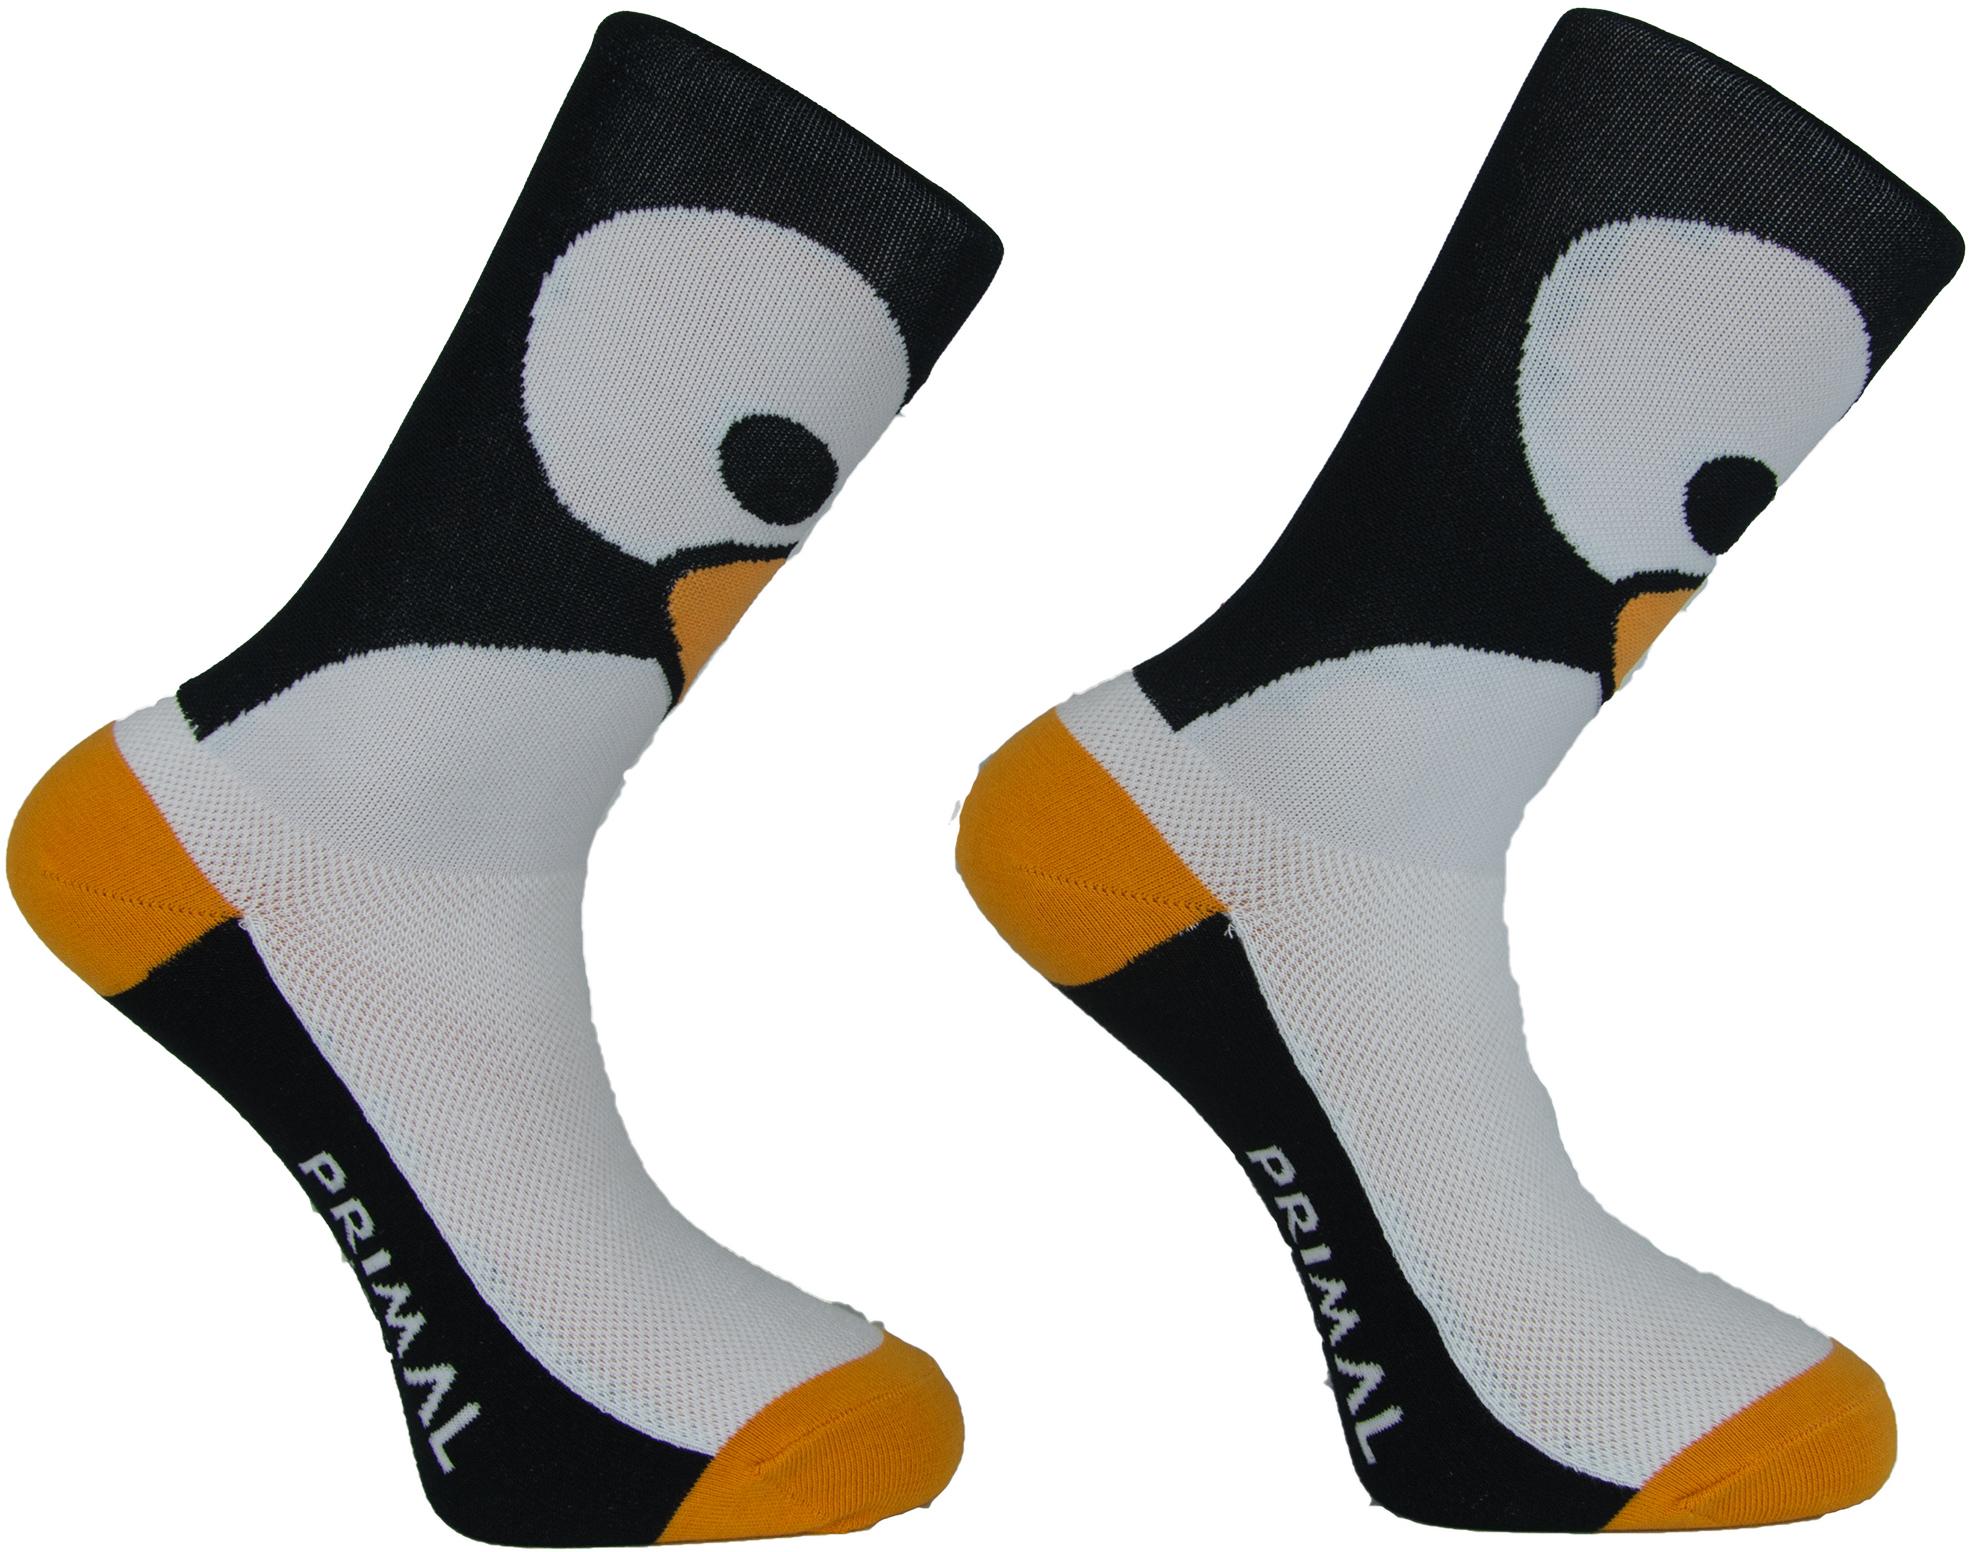 Primal Flipper Feet Socks - Black/white